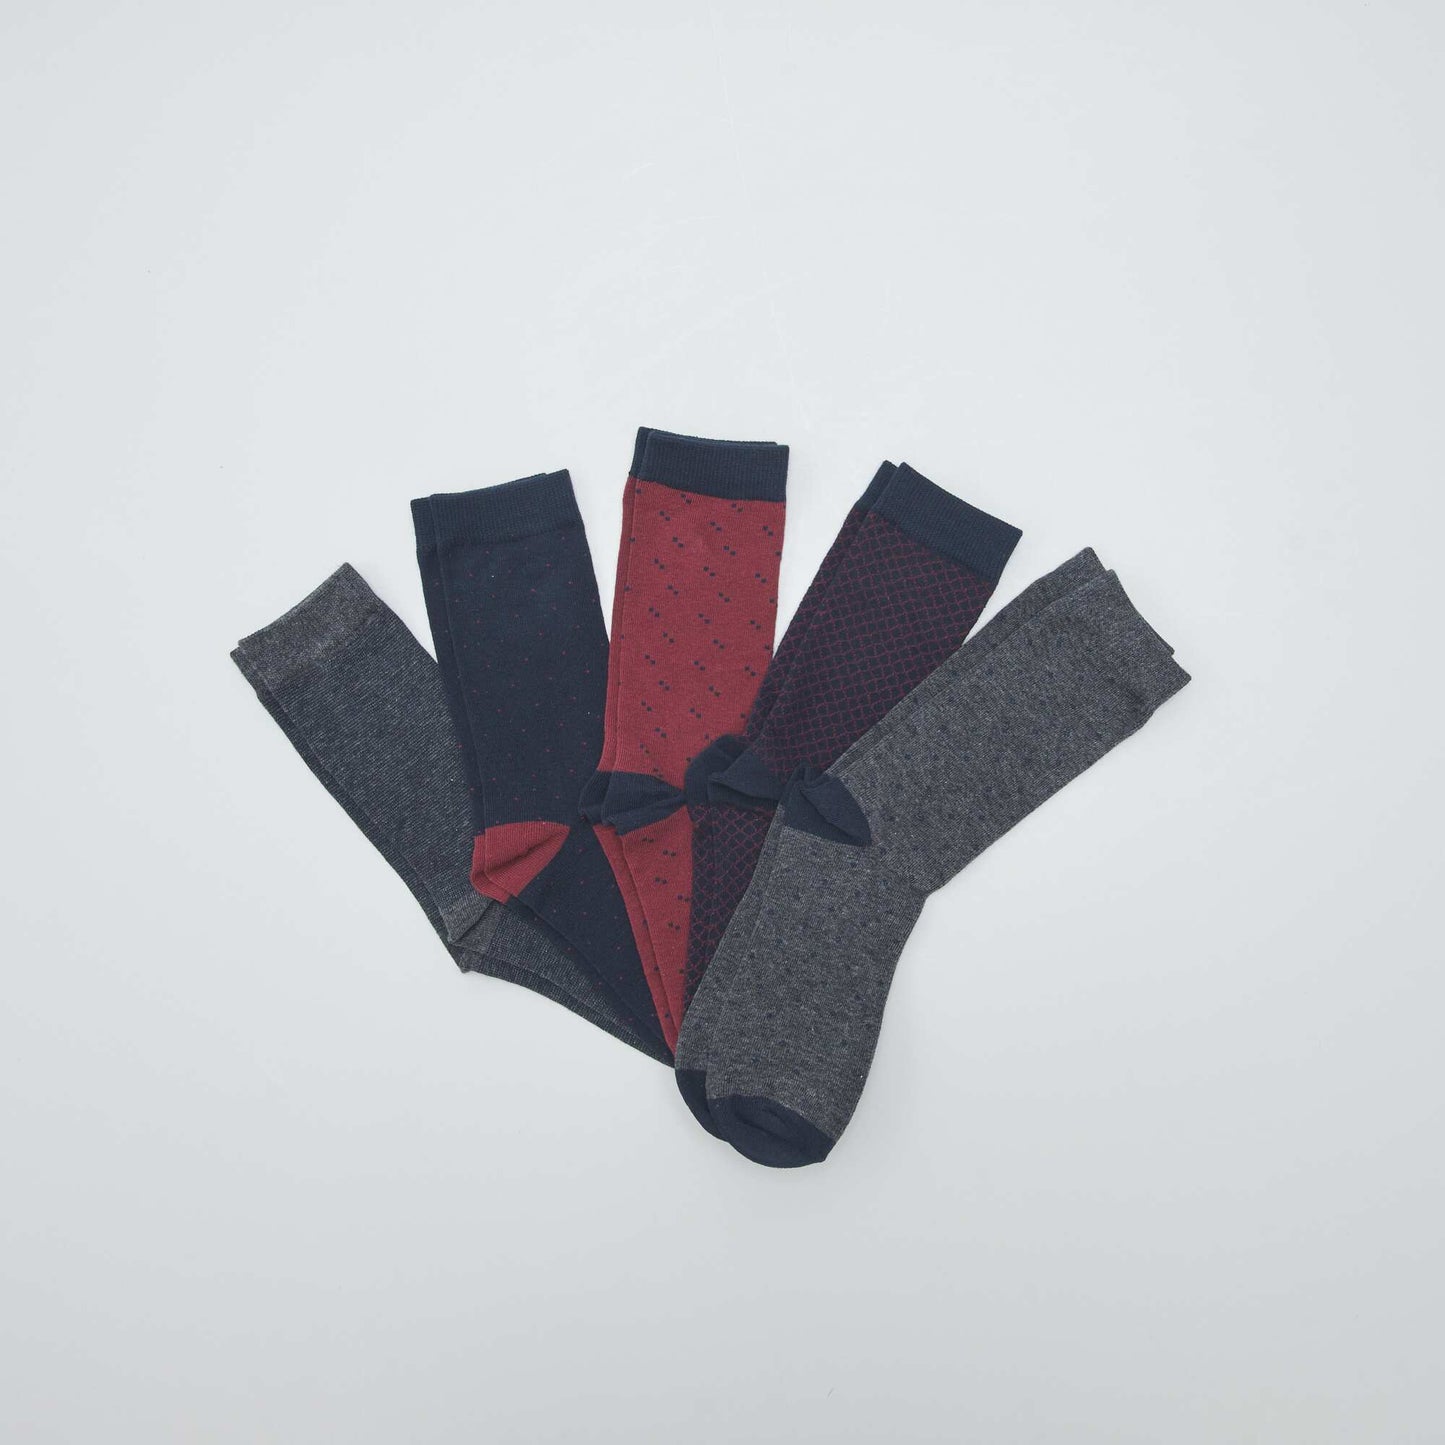 Pack of 5 pairs of fancy socks BURGUNDY1